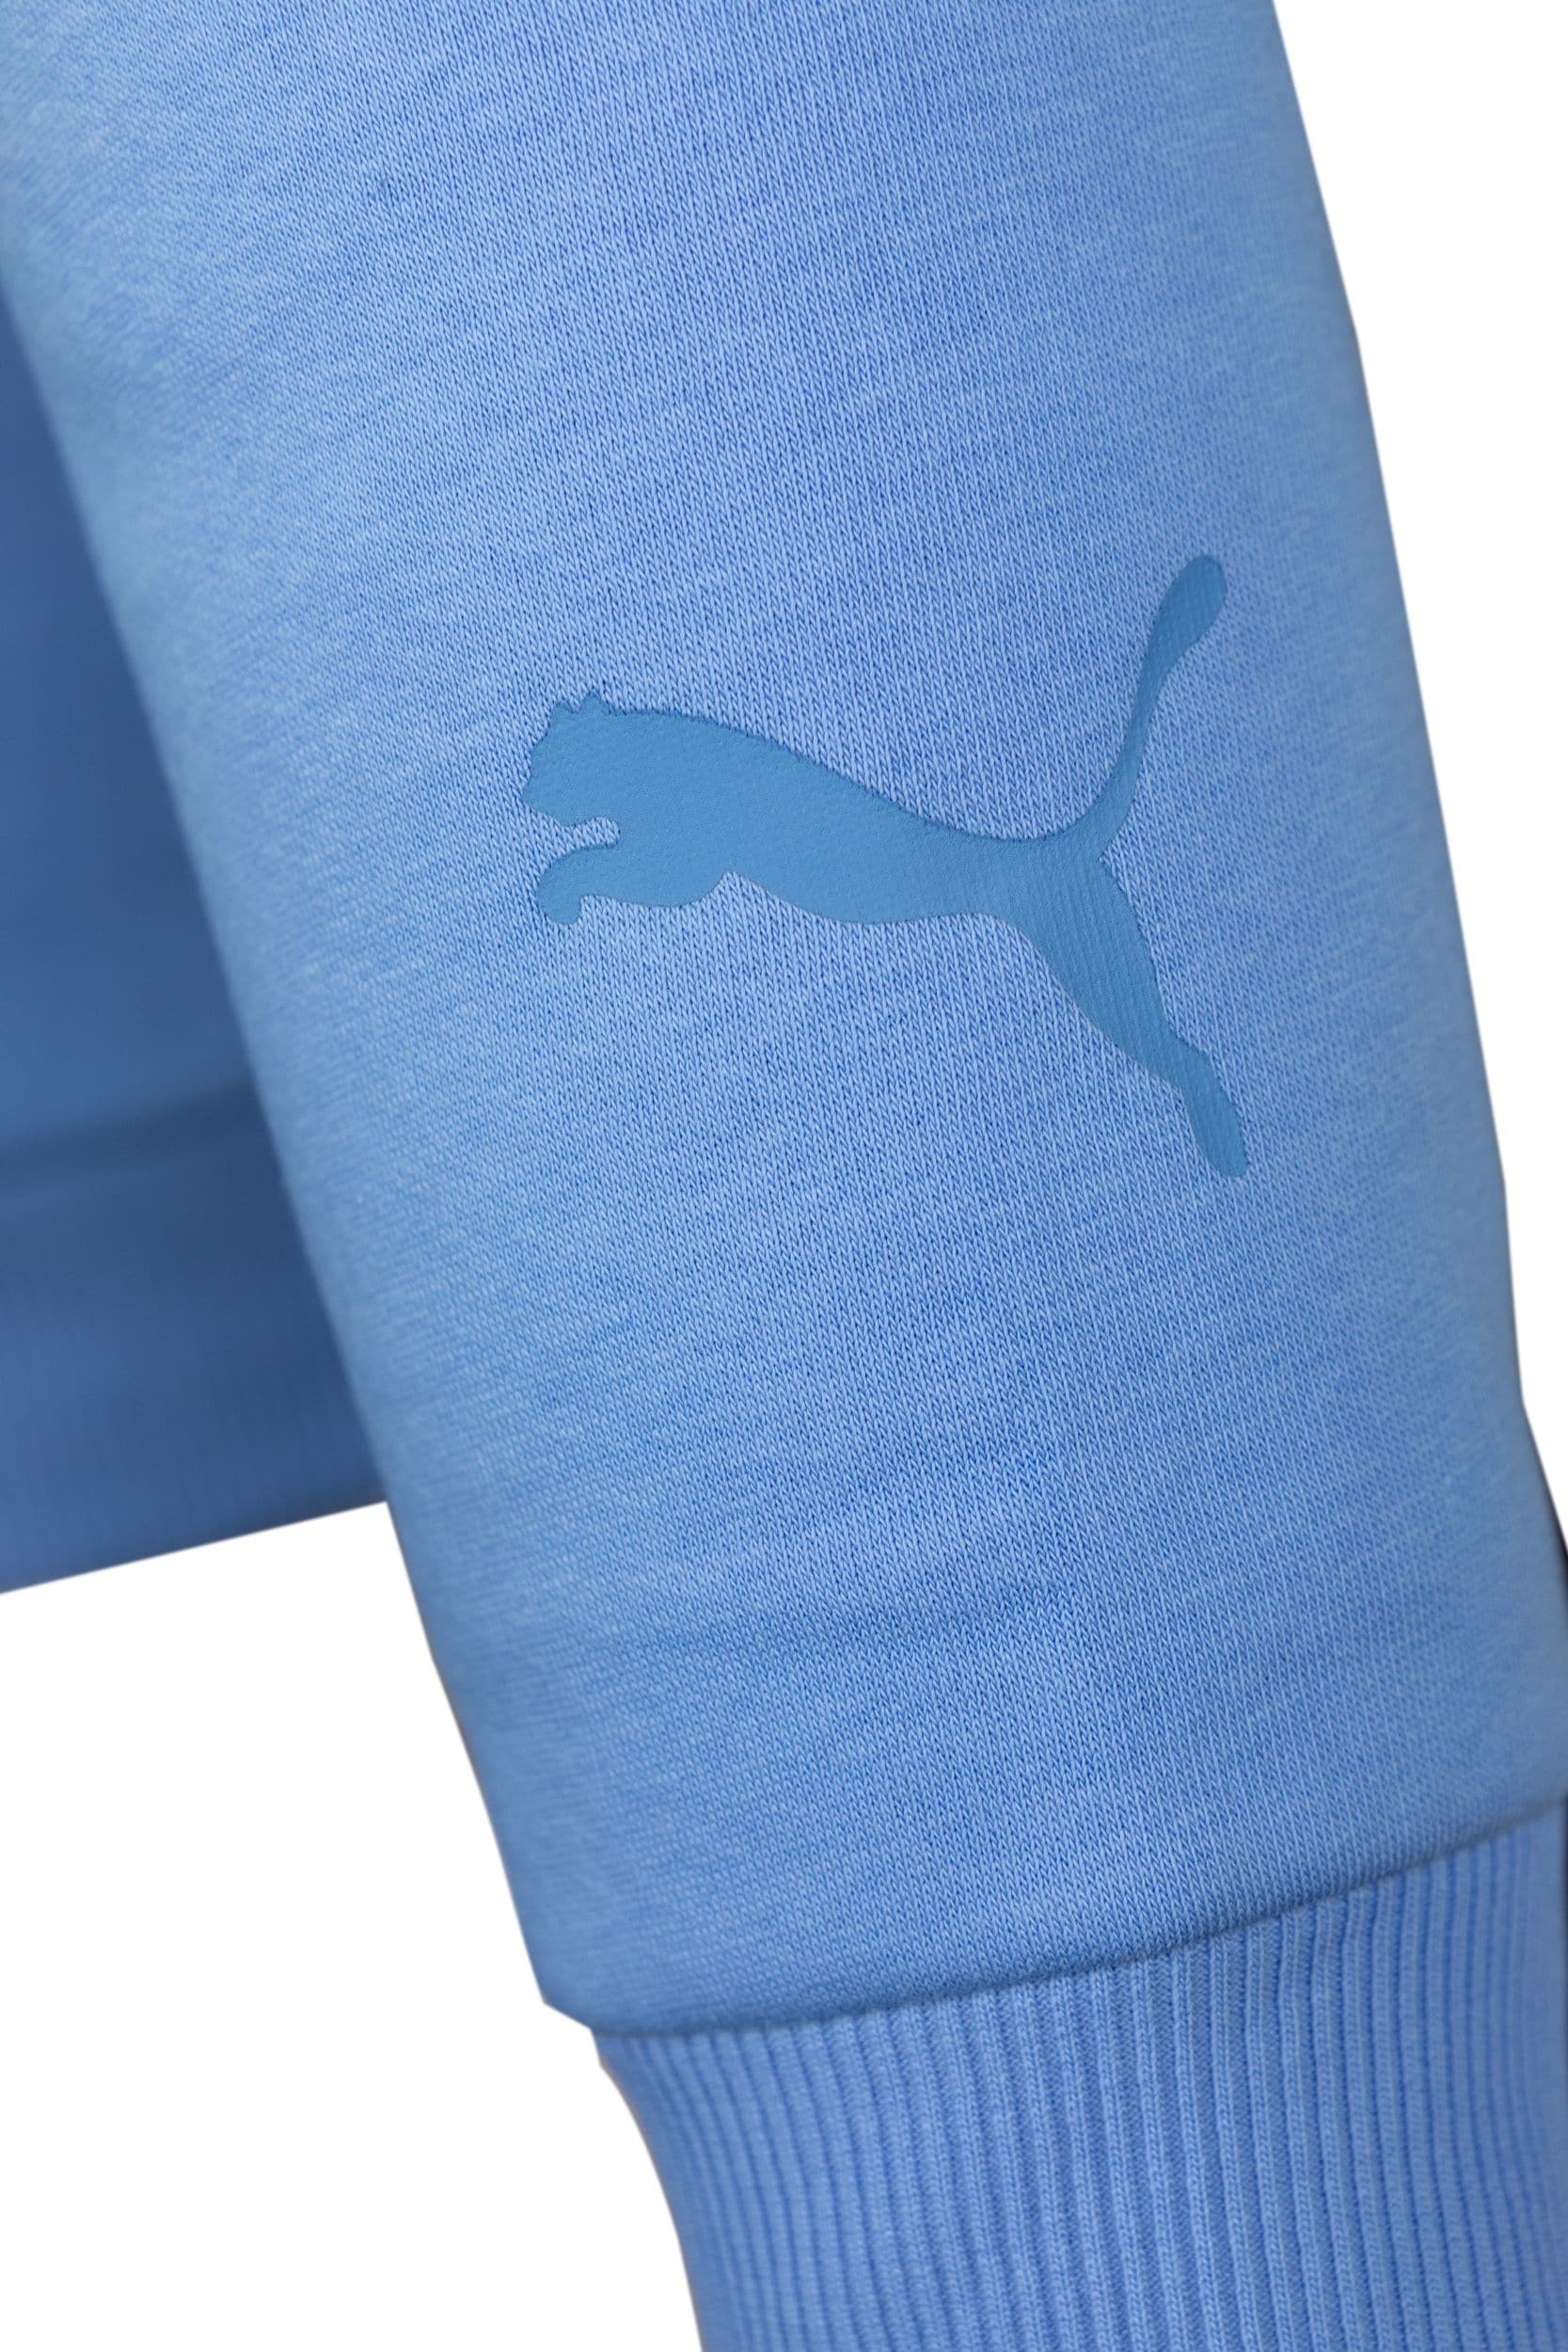 Puma hood ljusblå stor logo